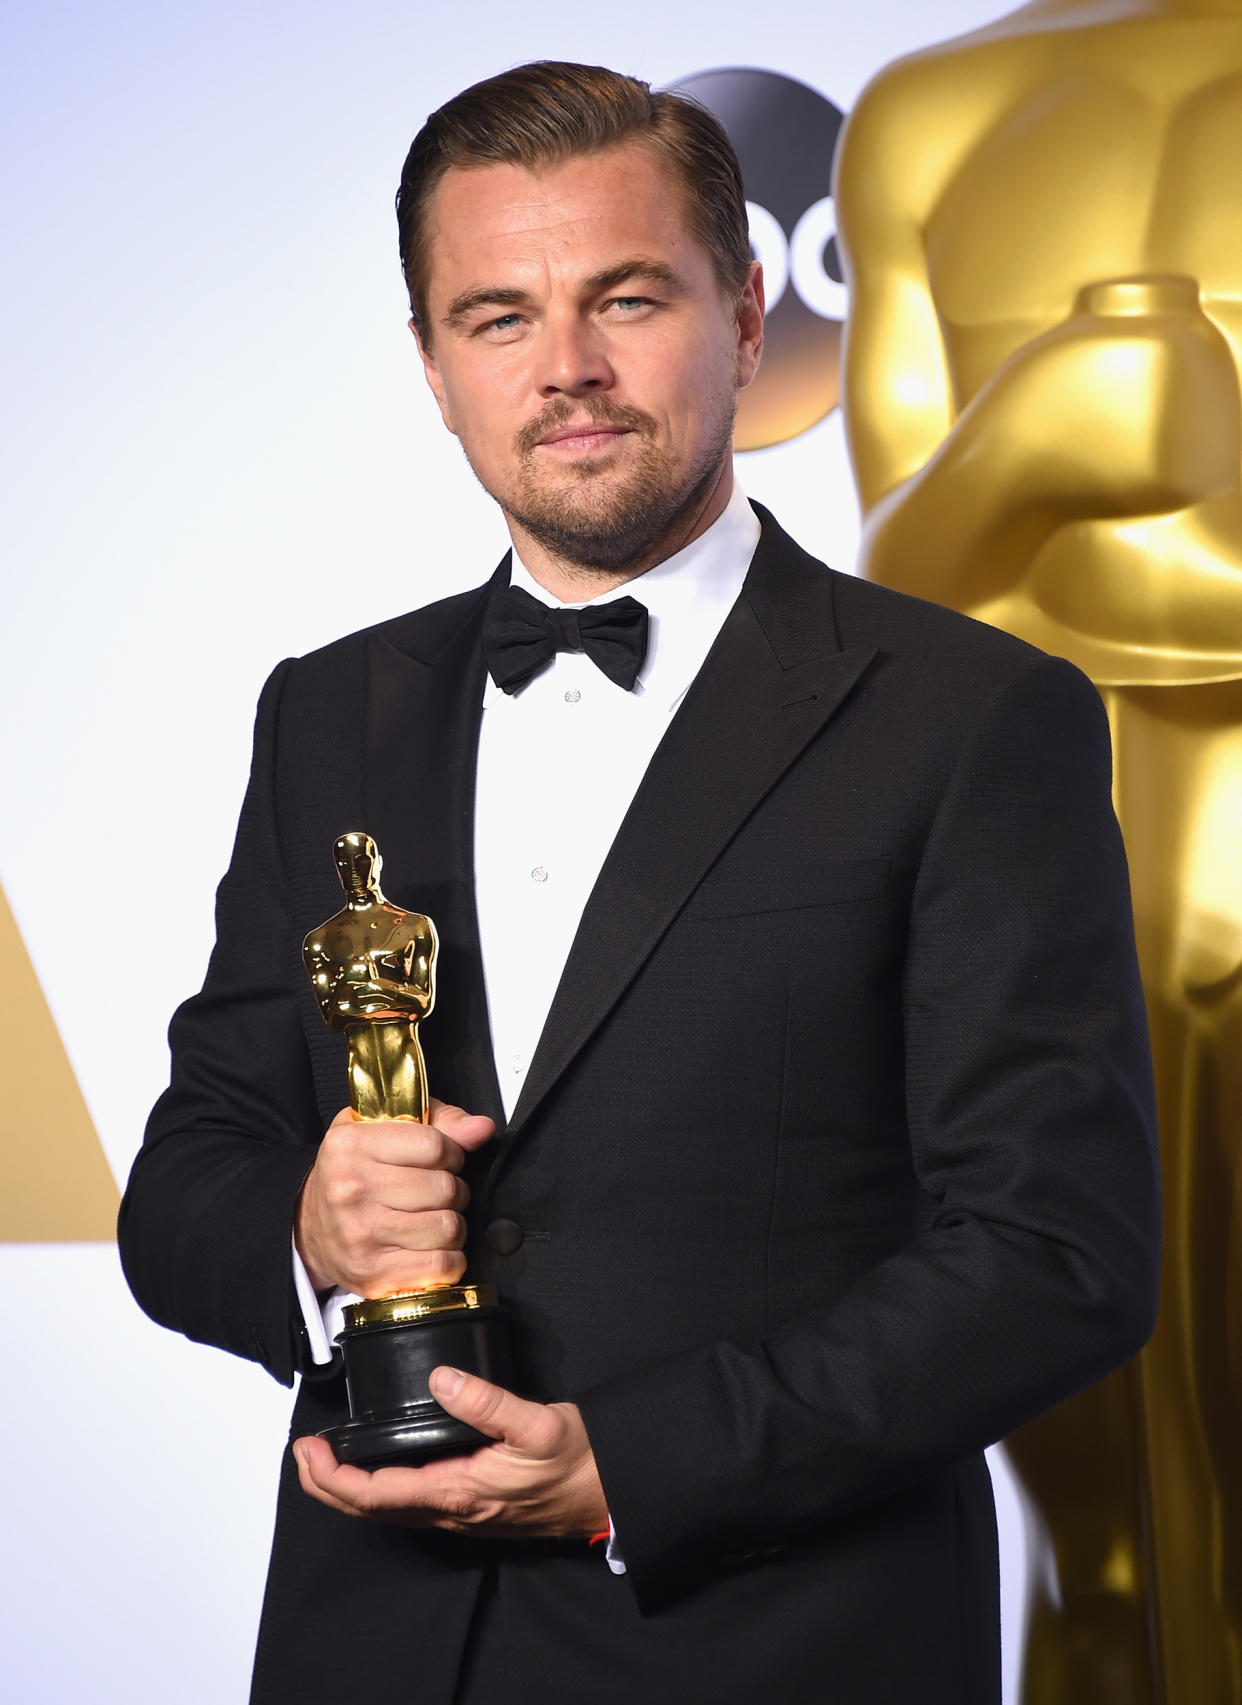 Leonardo DiCaprio poses with his Oscar. (Jason Merritt/TERM / Getty Images)